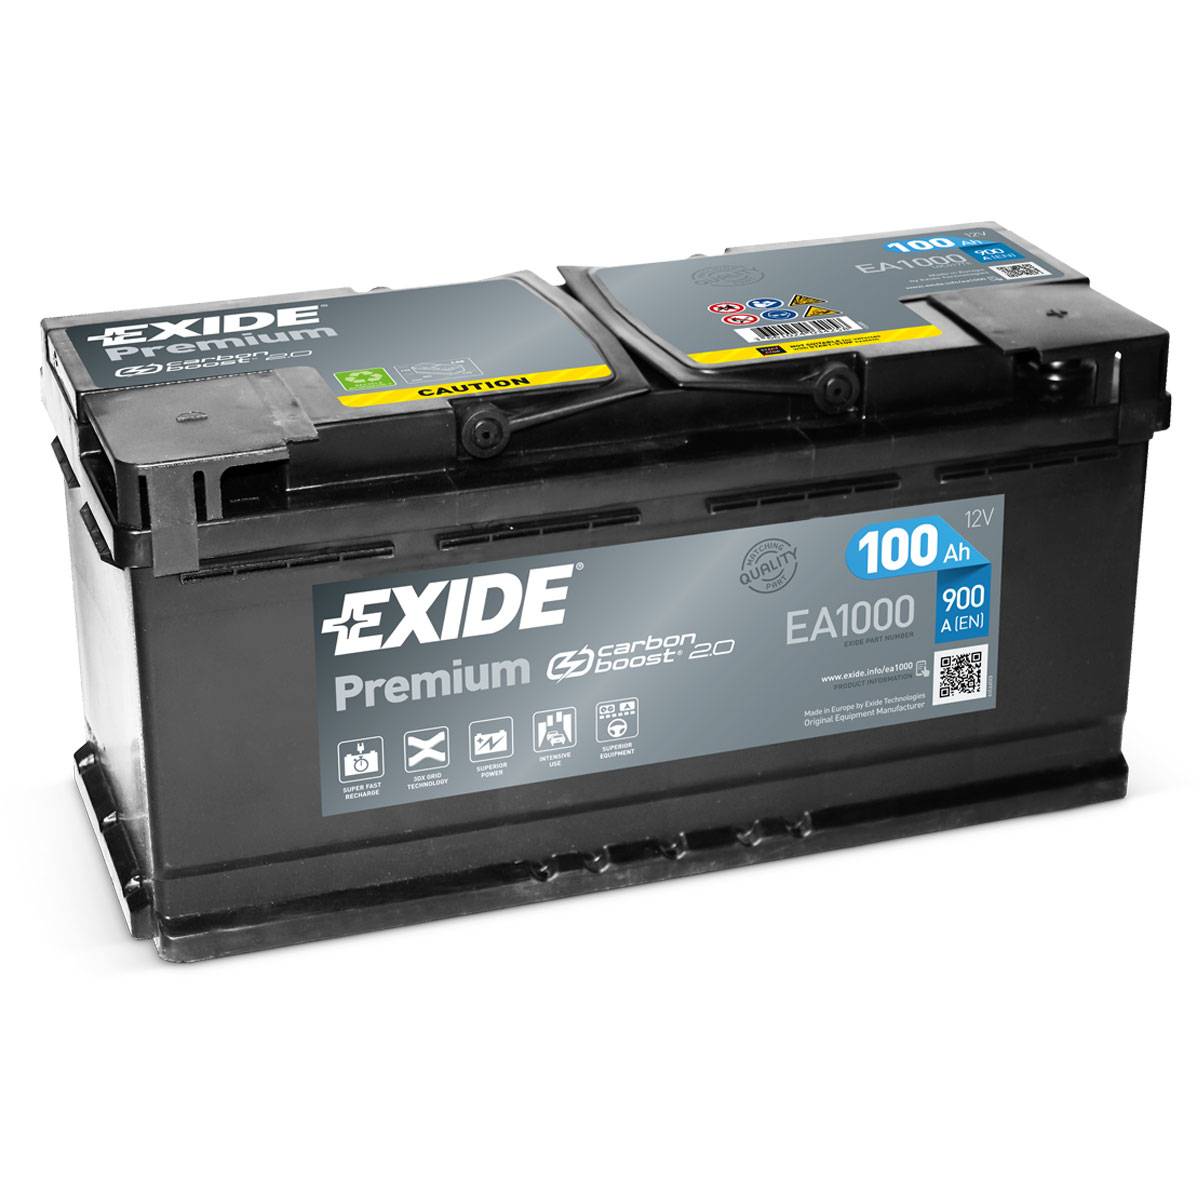 Exide EA1000 Premium Carbon Boost 12V 100Ah 900A Autobatterie, Starterbatterie, Boot, Batterien für